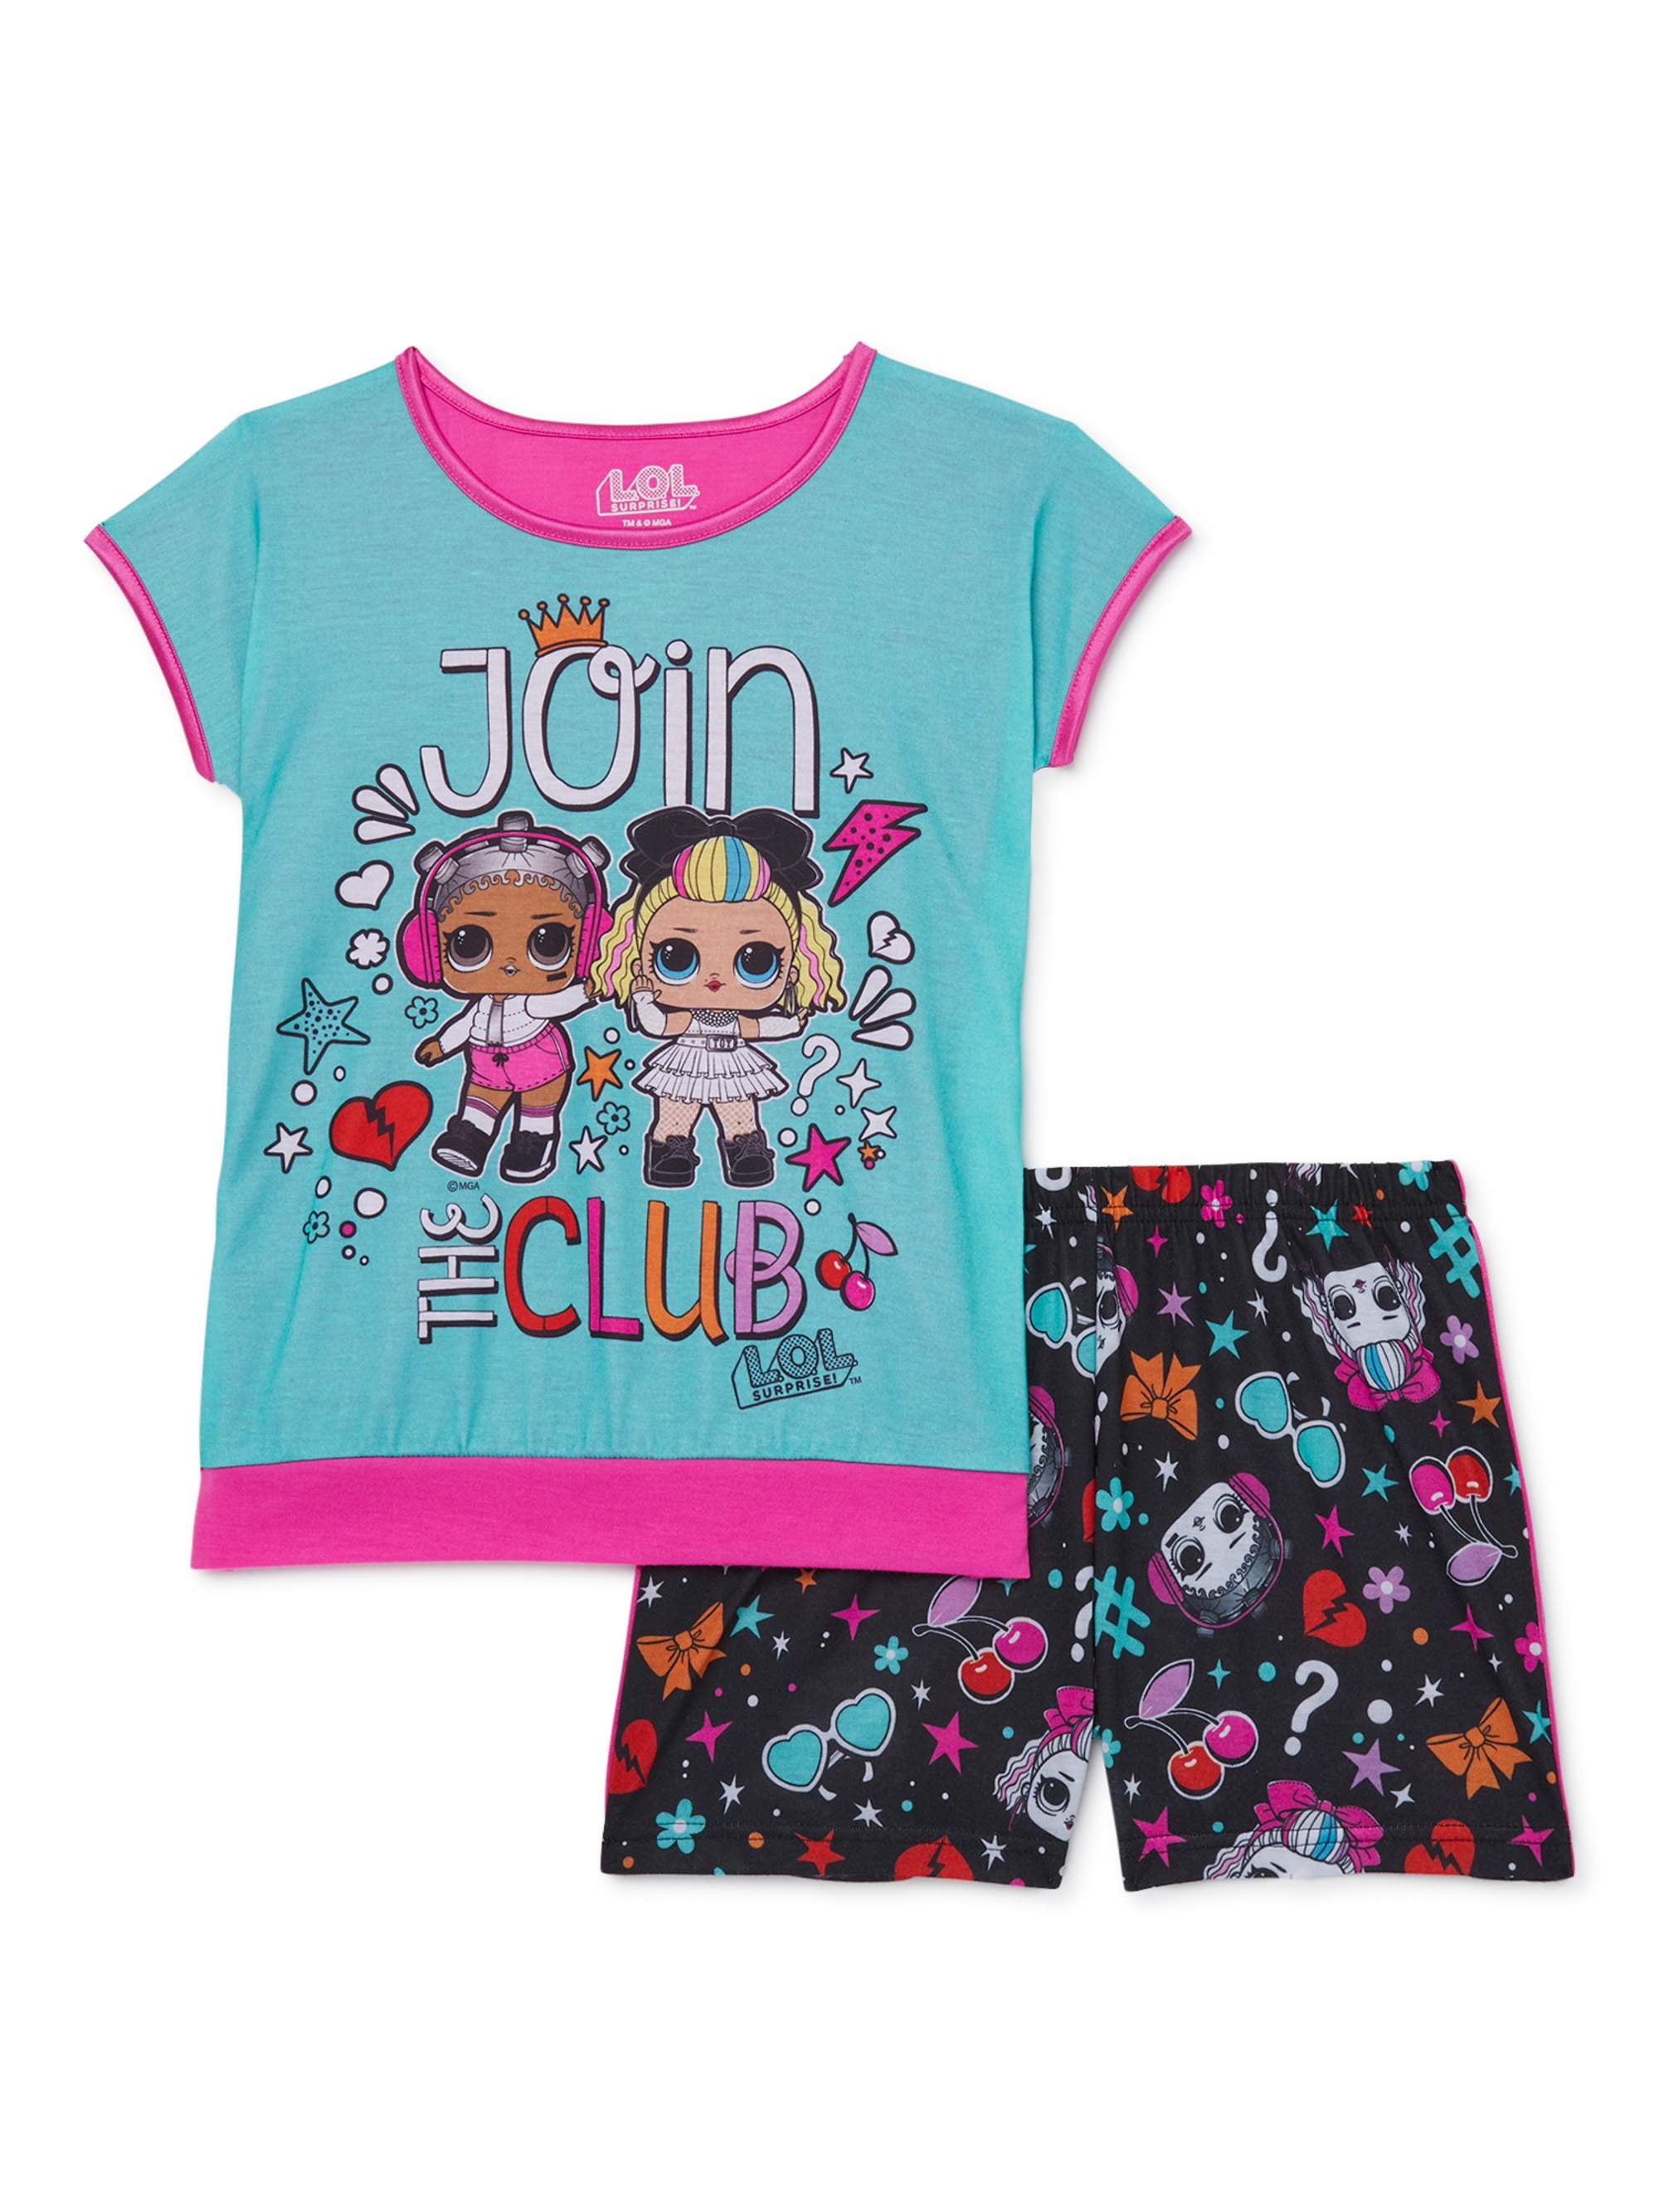 Lol Surprise Pijama para niñas Dolls